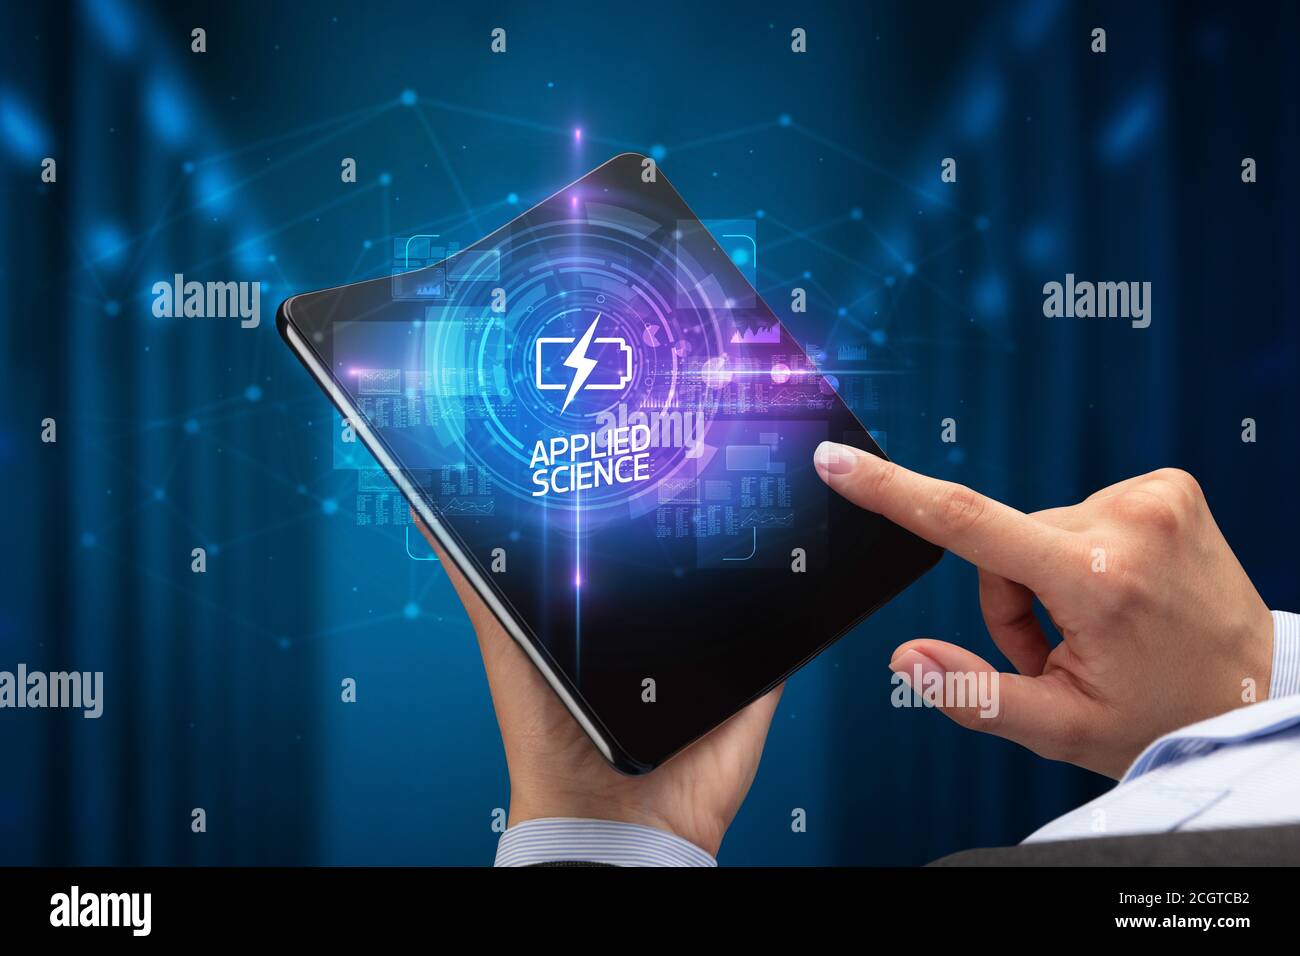 Empresario sosteniendo un smartphone plegable con Internet inscripción, nueva tecnología concepto ciencia aplicada Foto de stock